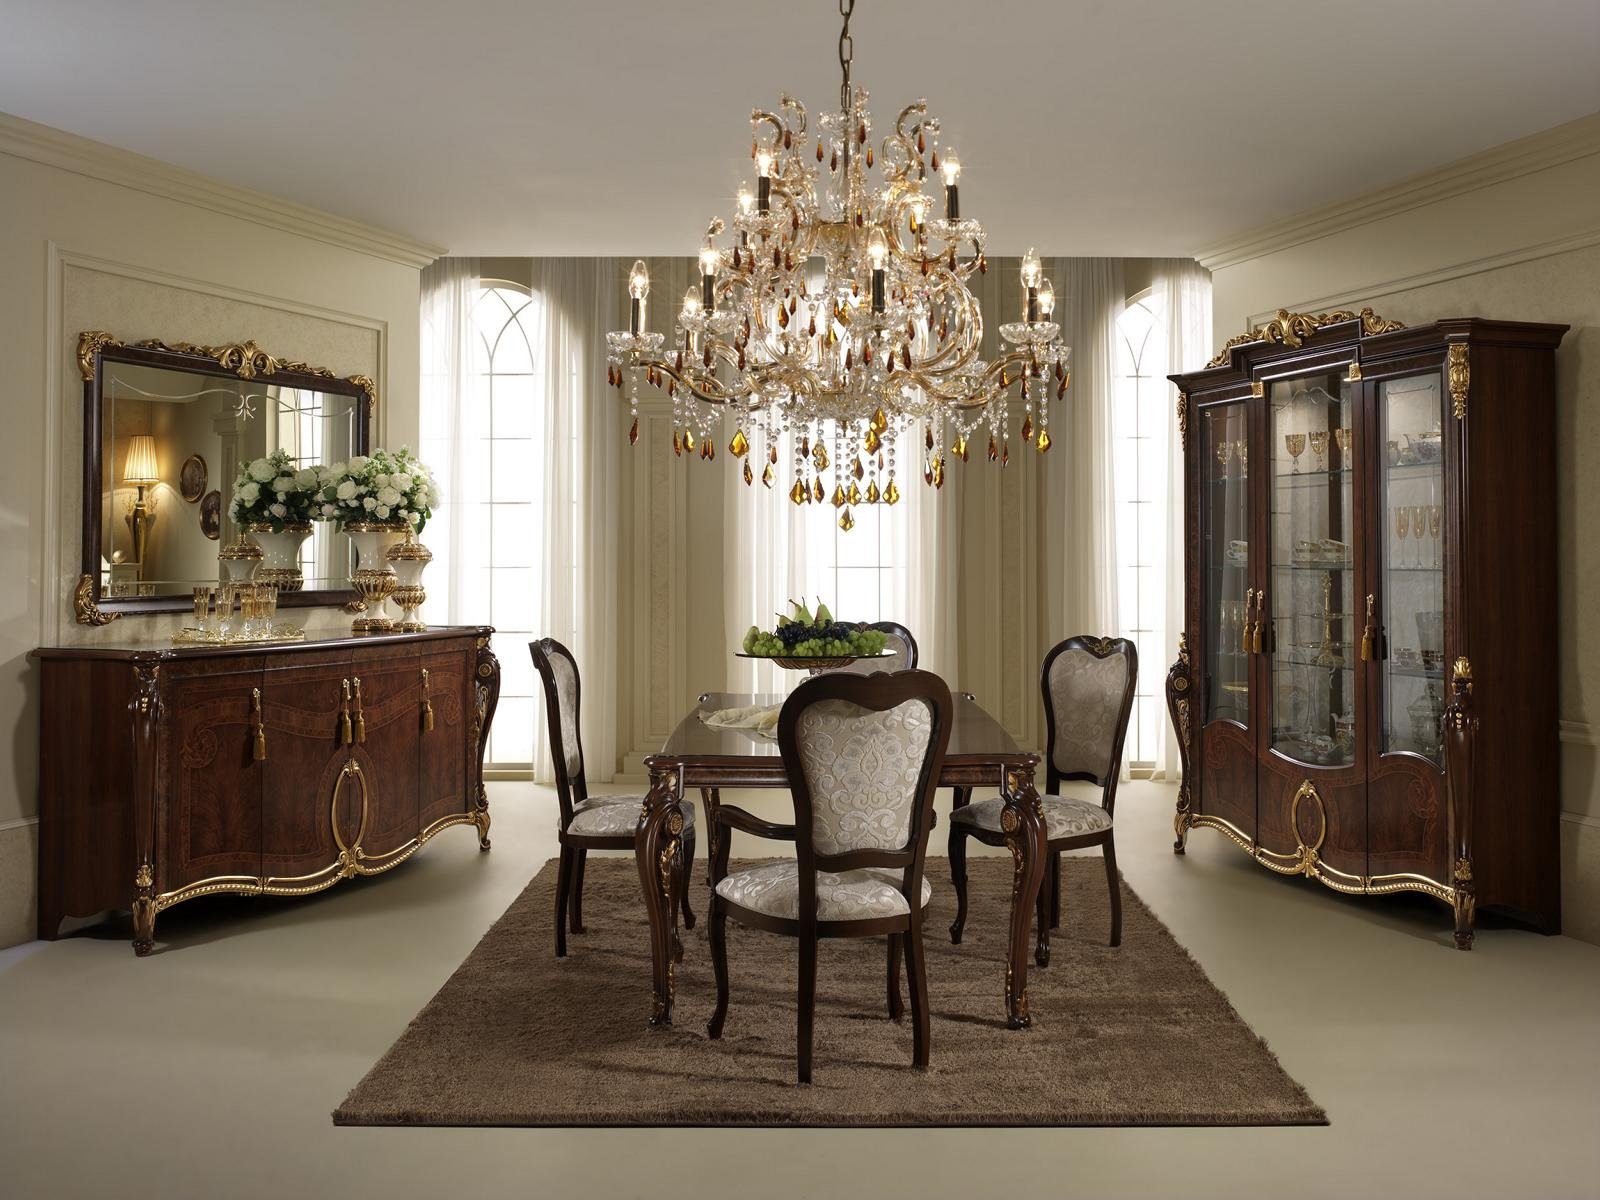 Essgruppe, JVmoebel Holz Stühle Designer arredoclassic™ Möbel 4 Garnitur Esszimmer Italienische Klassische Stühle